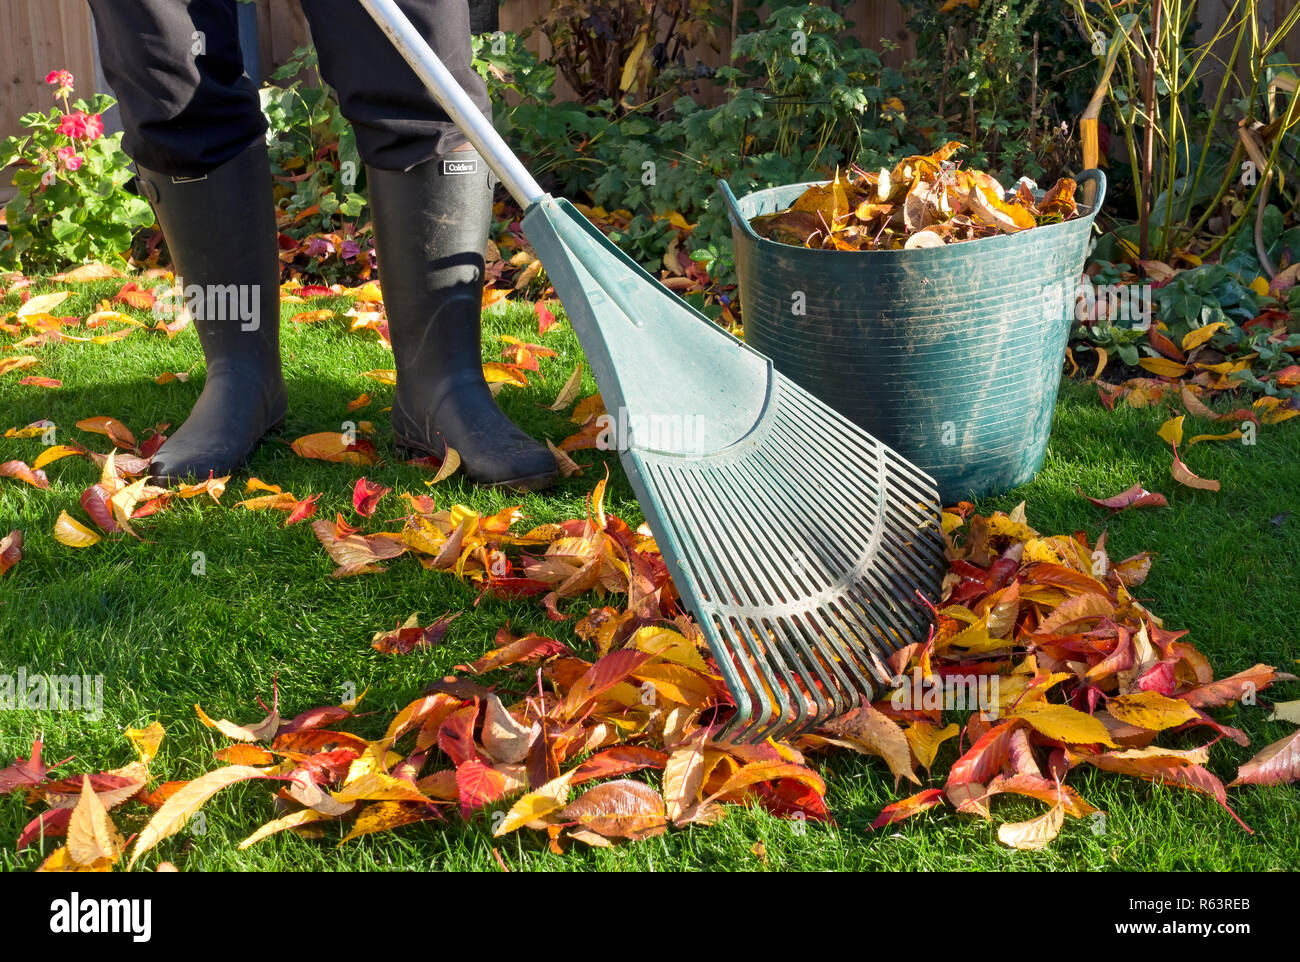 Nahaufnahme der Person Mann Gärtner Mann sammeln Raking fegenden gefallenen Blätter auf Gras Garten Rasen im Herbst England Großbritannien GB Großbritannien Stockfoto